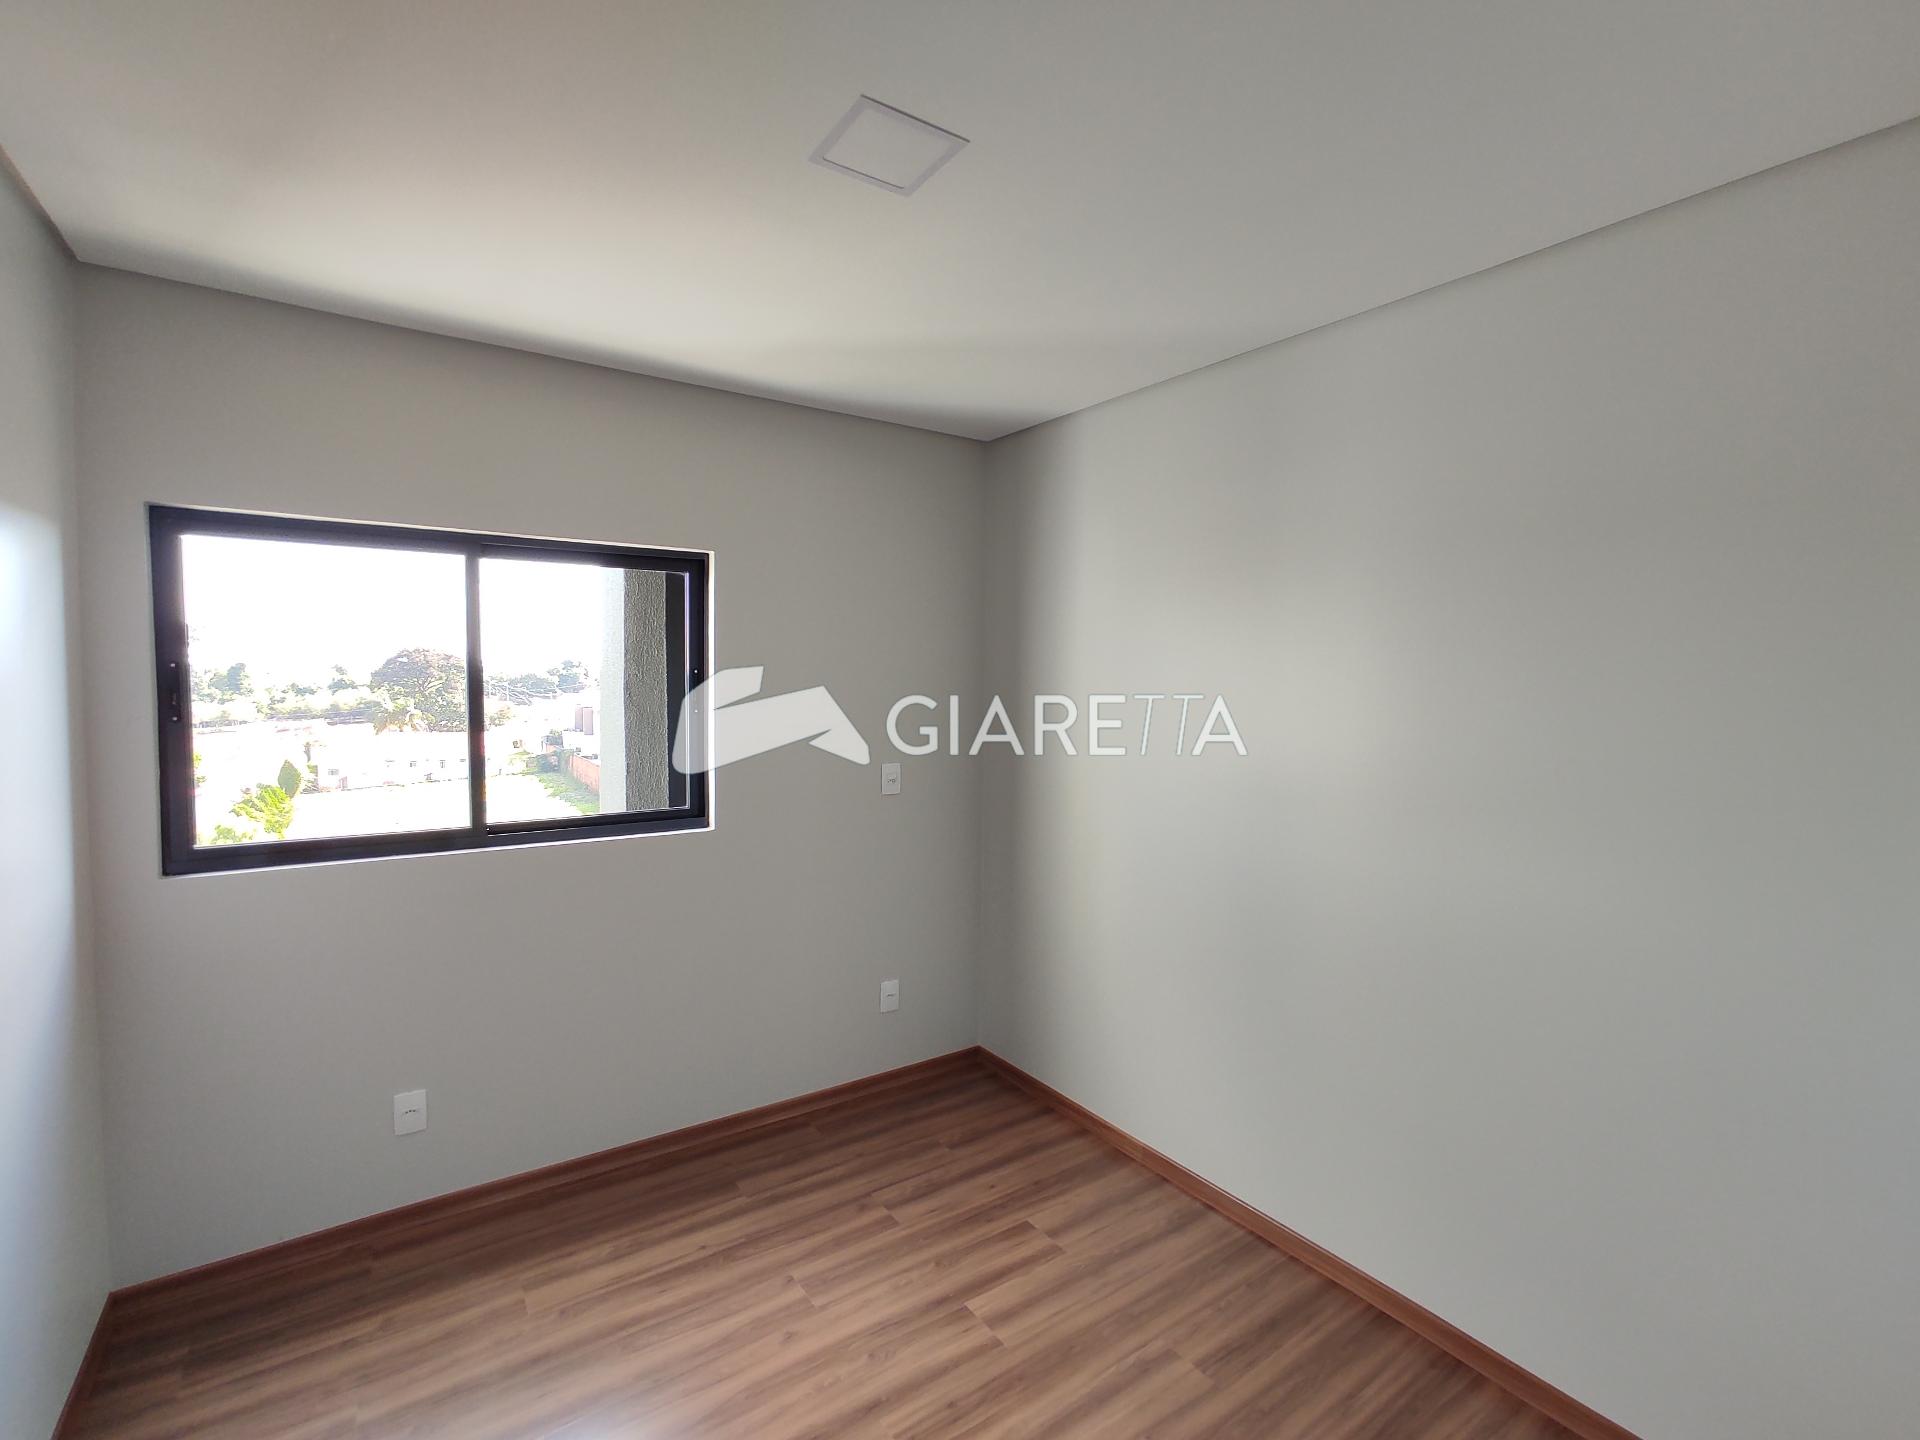 Apartamento, 1 quarto, 66 m² - Foto 2